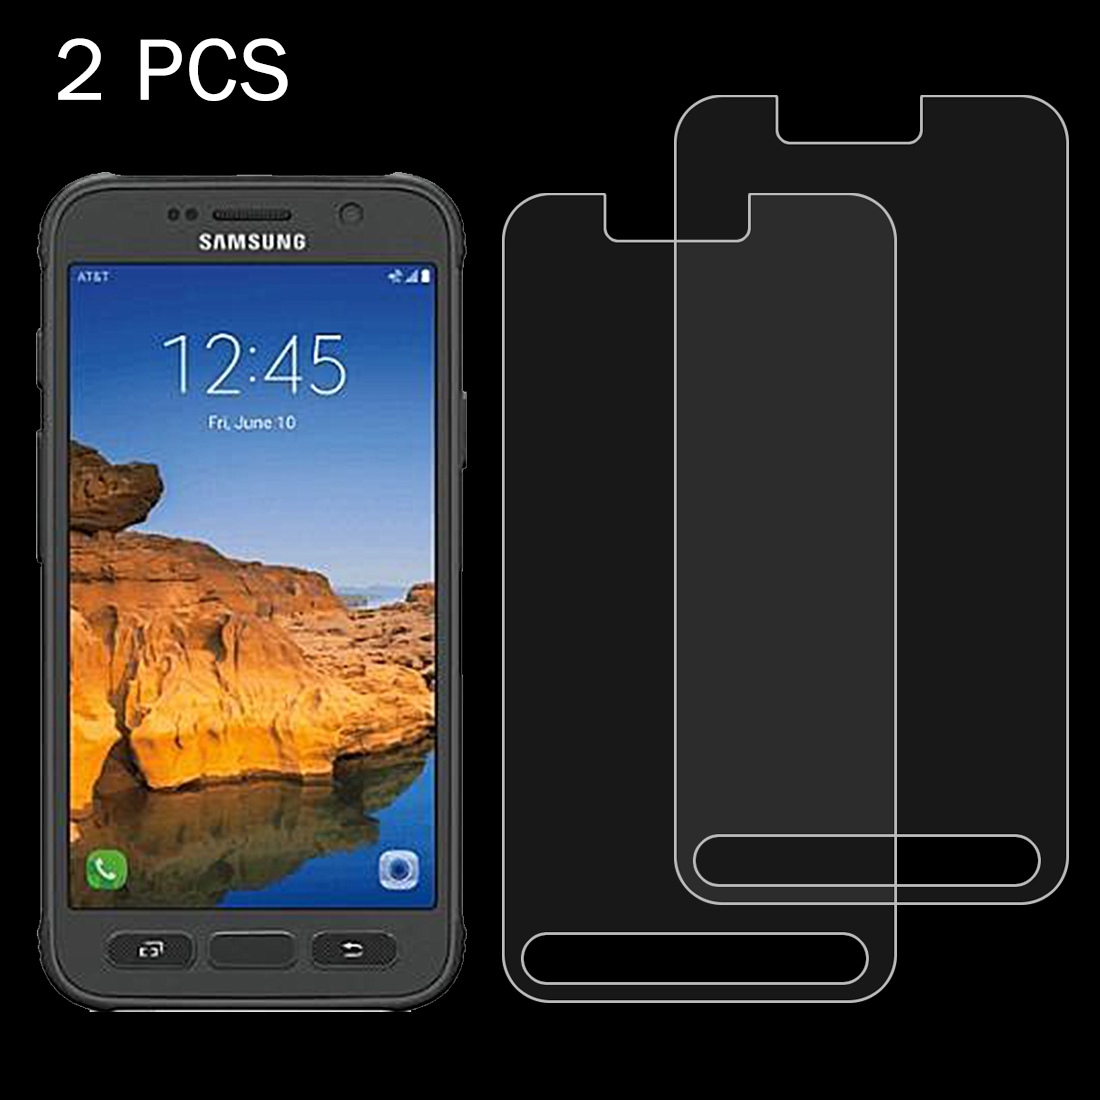 Lasisuoja Samsung Galaxy S7 Active - 2Pakkaus temperoitu 0.26mm 9H